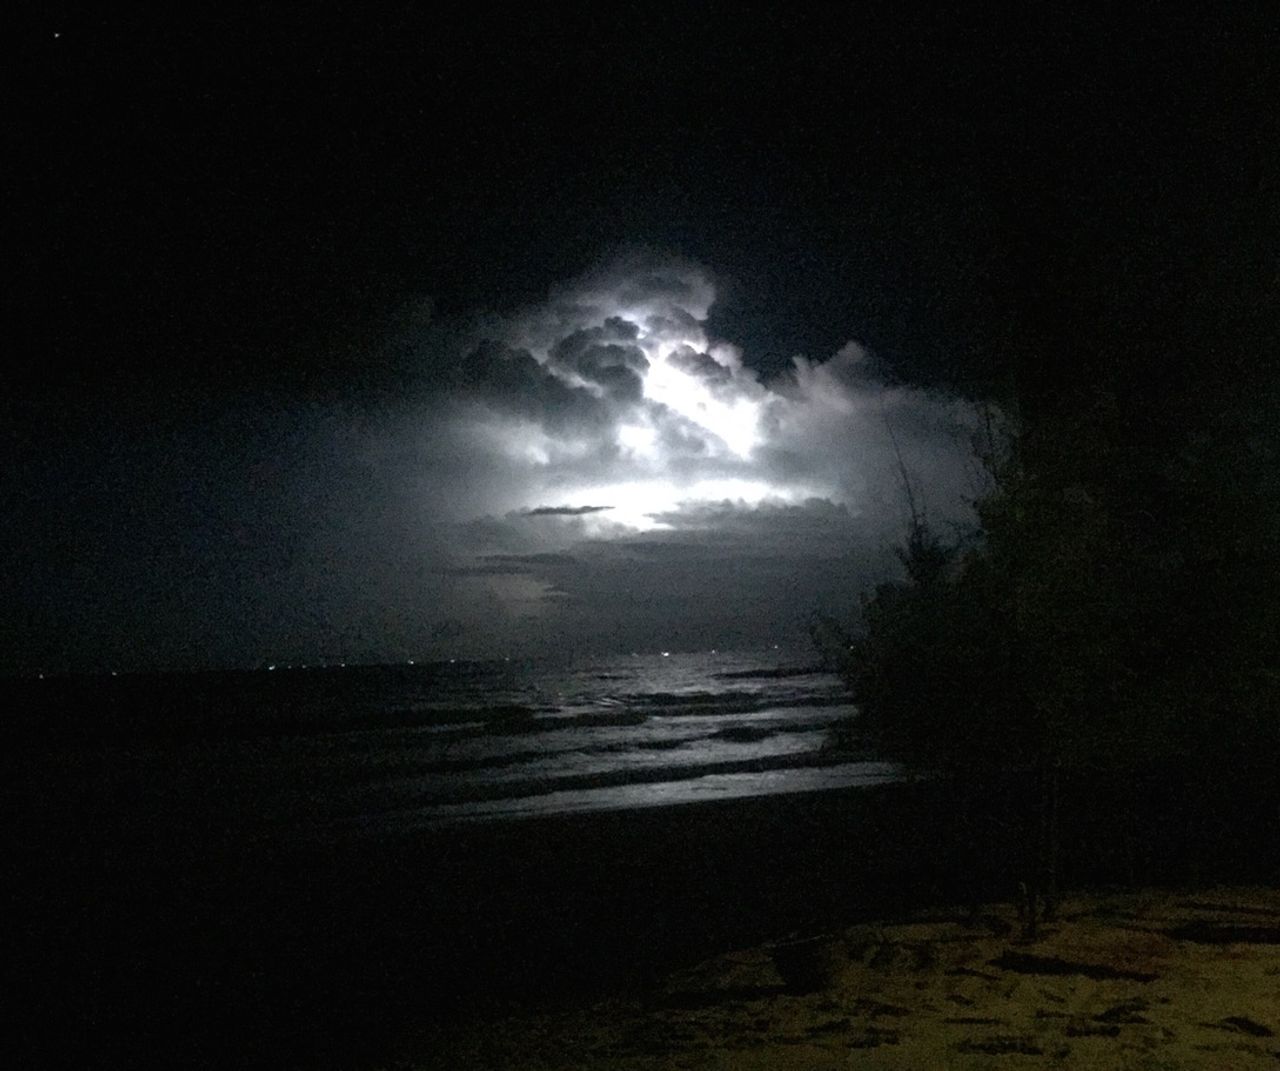 Lightning storm at night.